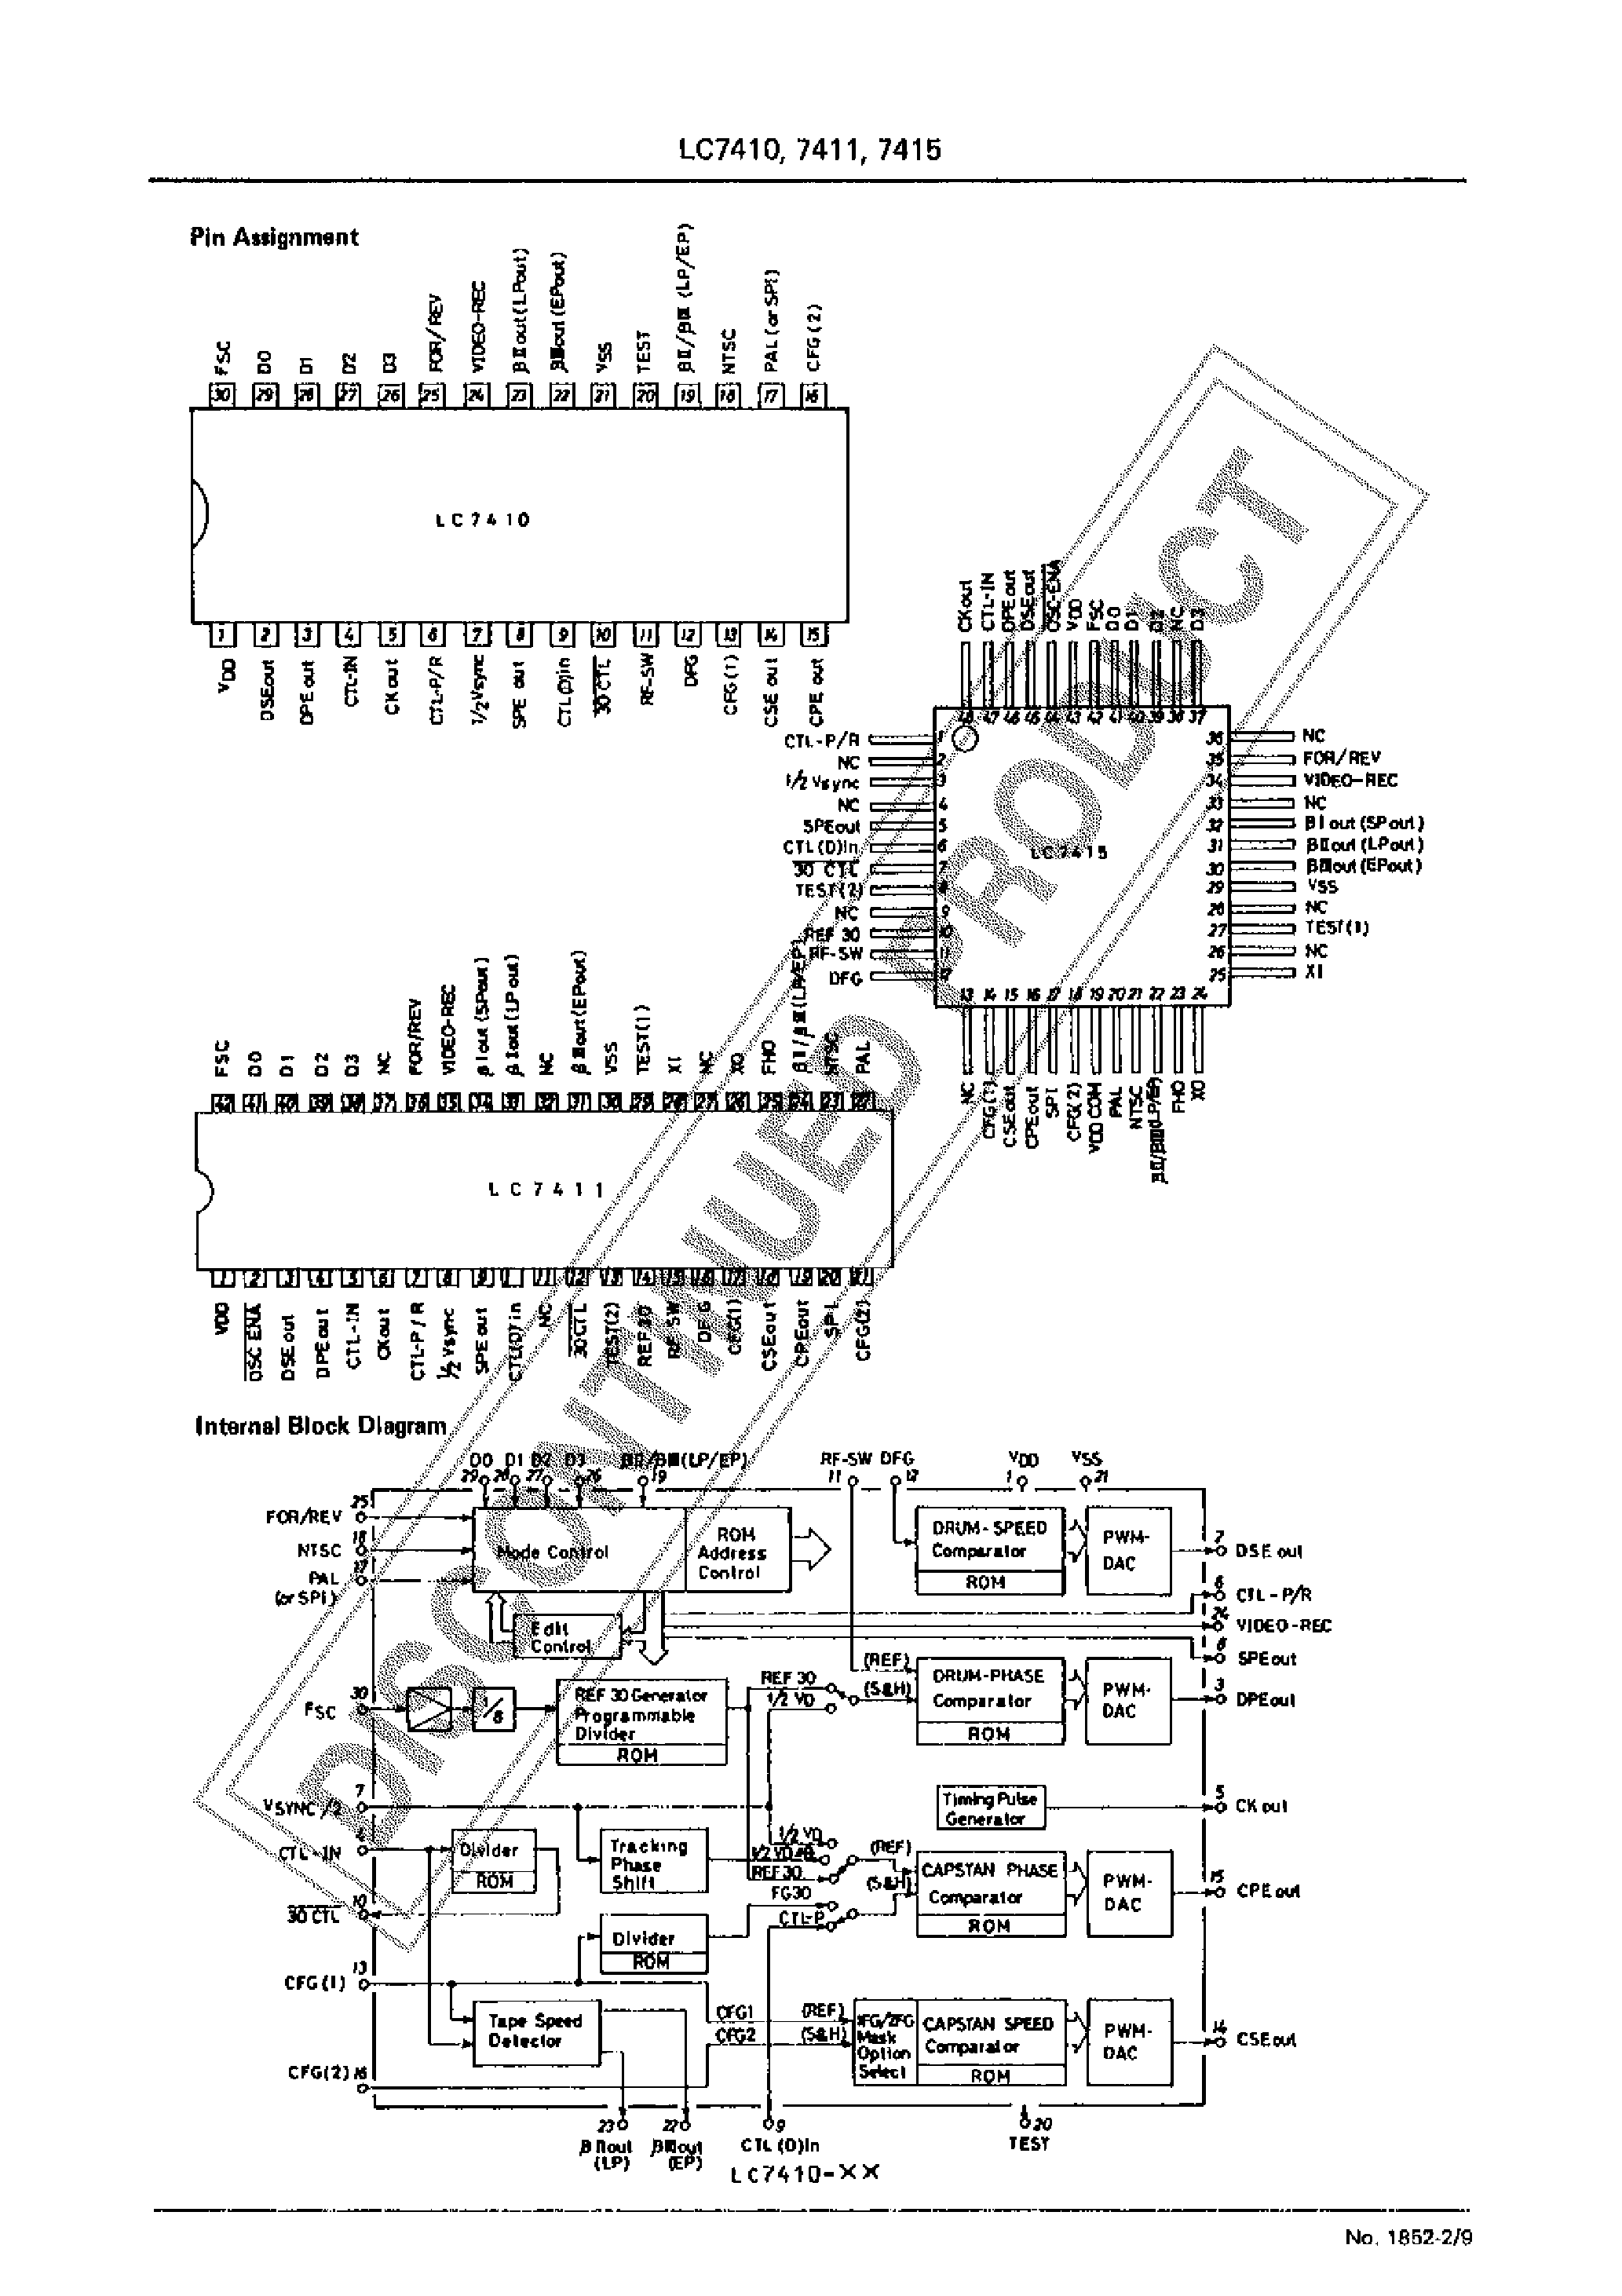 Datasheet LC7410 - (LC7410 - LC7415) CMOS LSI VTR(B/VHS) SERVO CIRCUIT page 2